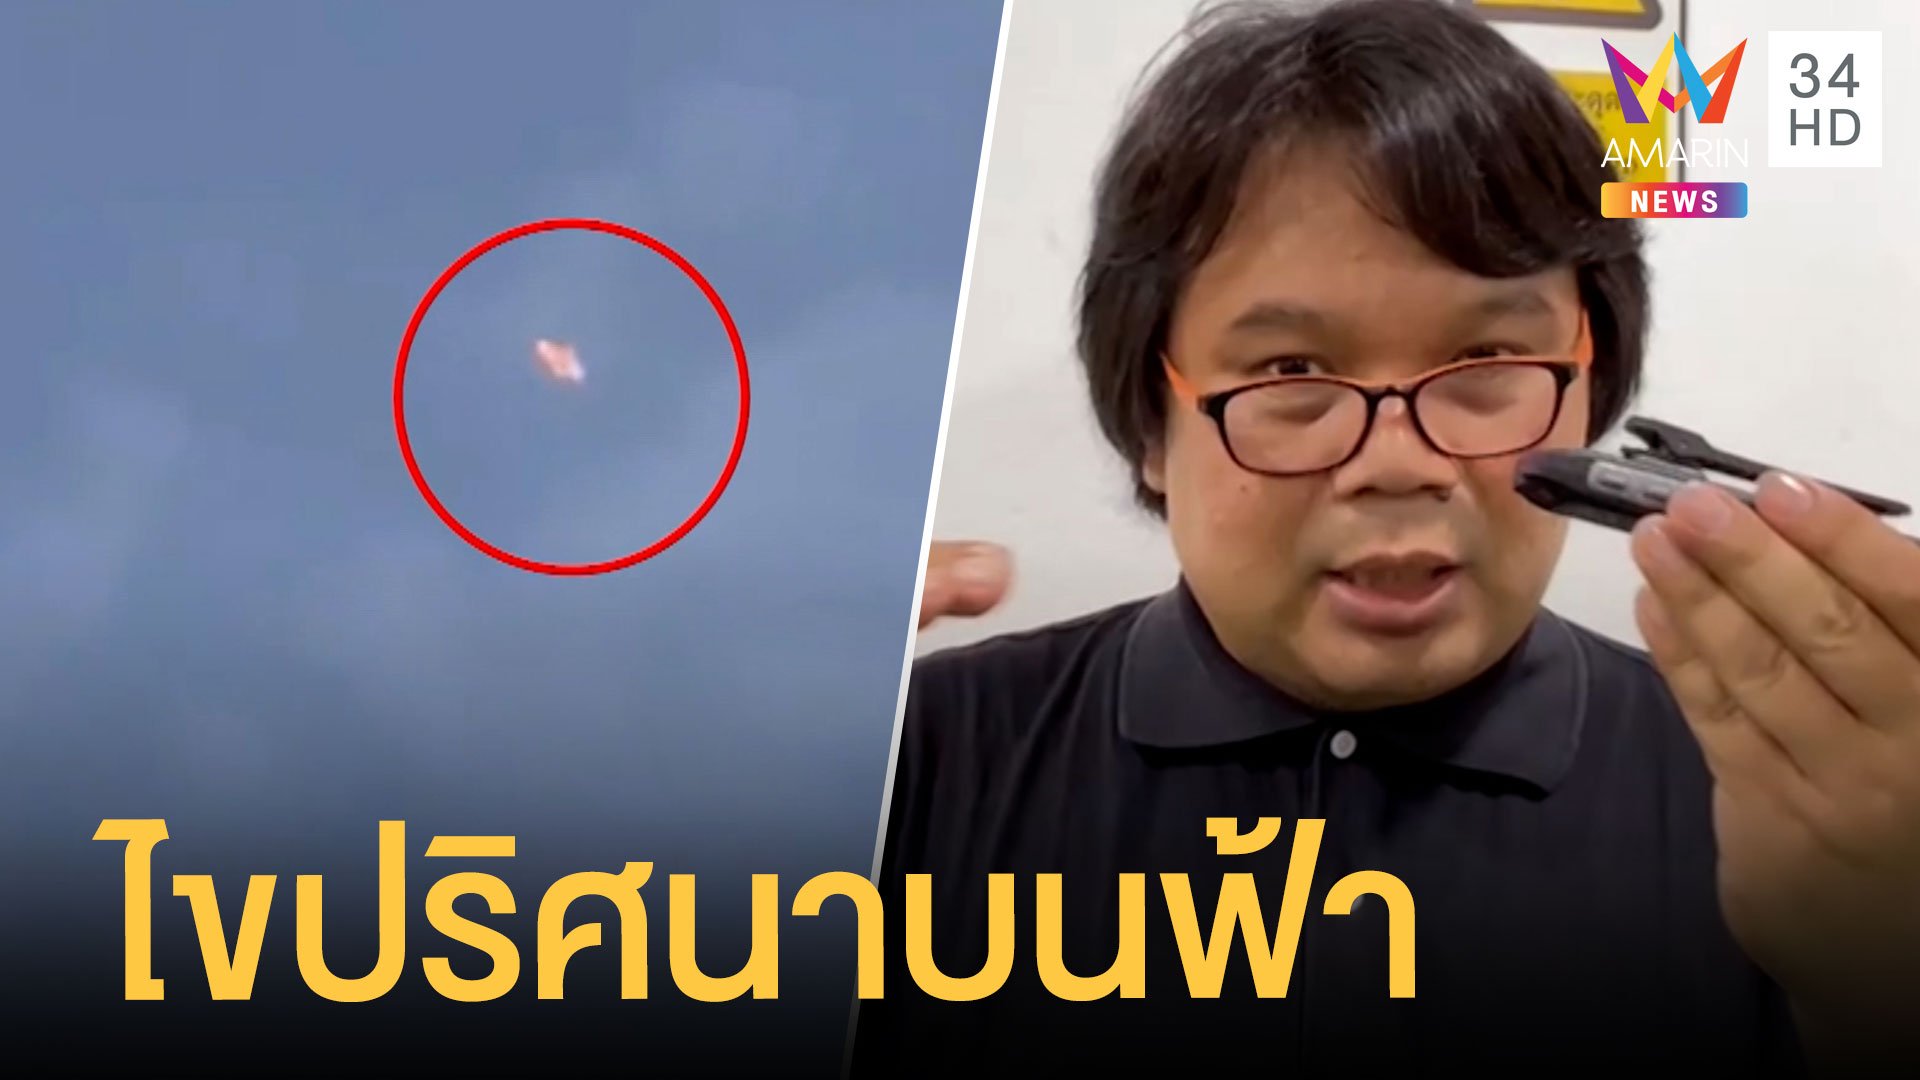 วัตถุปริศนาคล้าย UFO ลอยบนฟ้า อ.อ๊อด เชื่อแสงกระทบเครื่องบิน | ข่าวเที่ยงอมรินทร์ | 24 เม.ย. 65 | AMARIN TVHD34